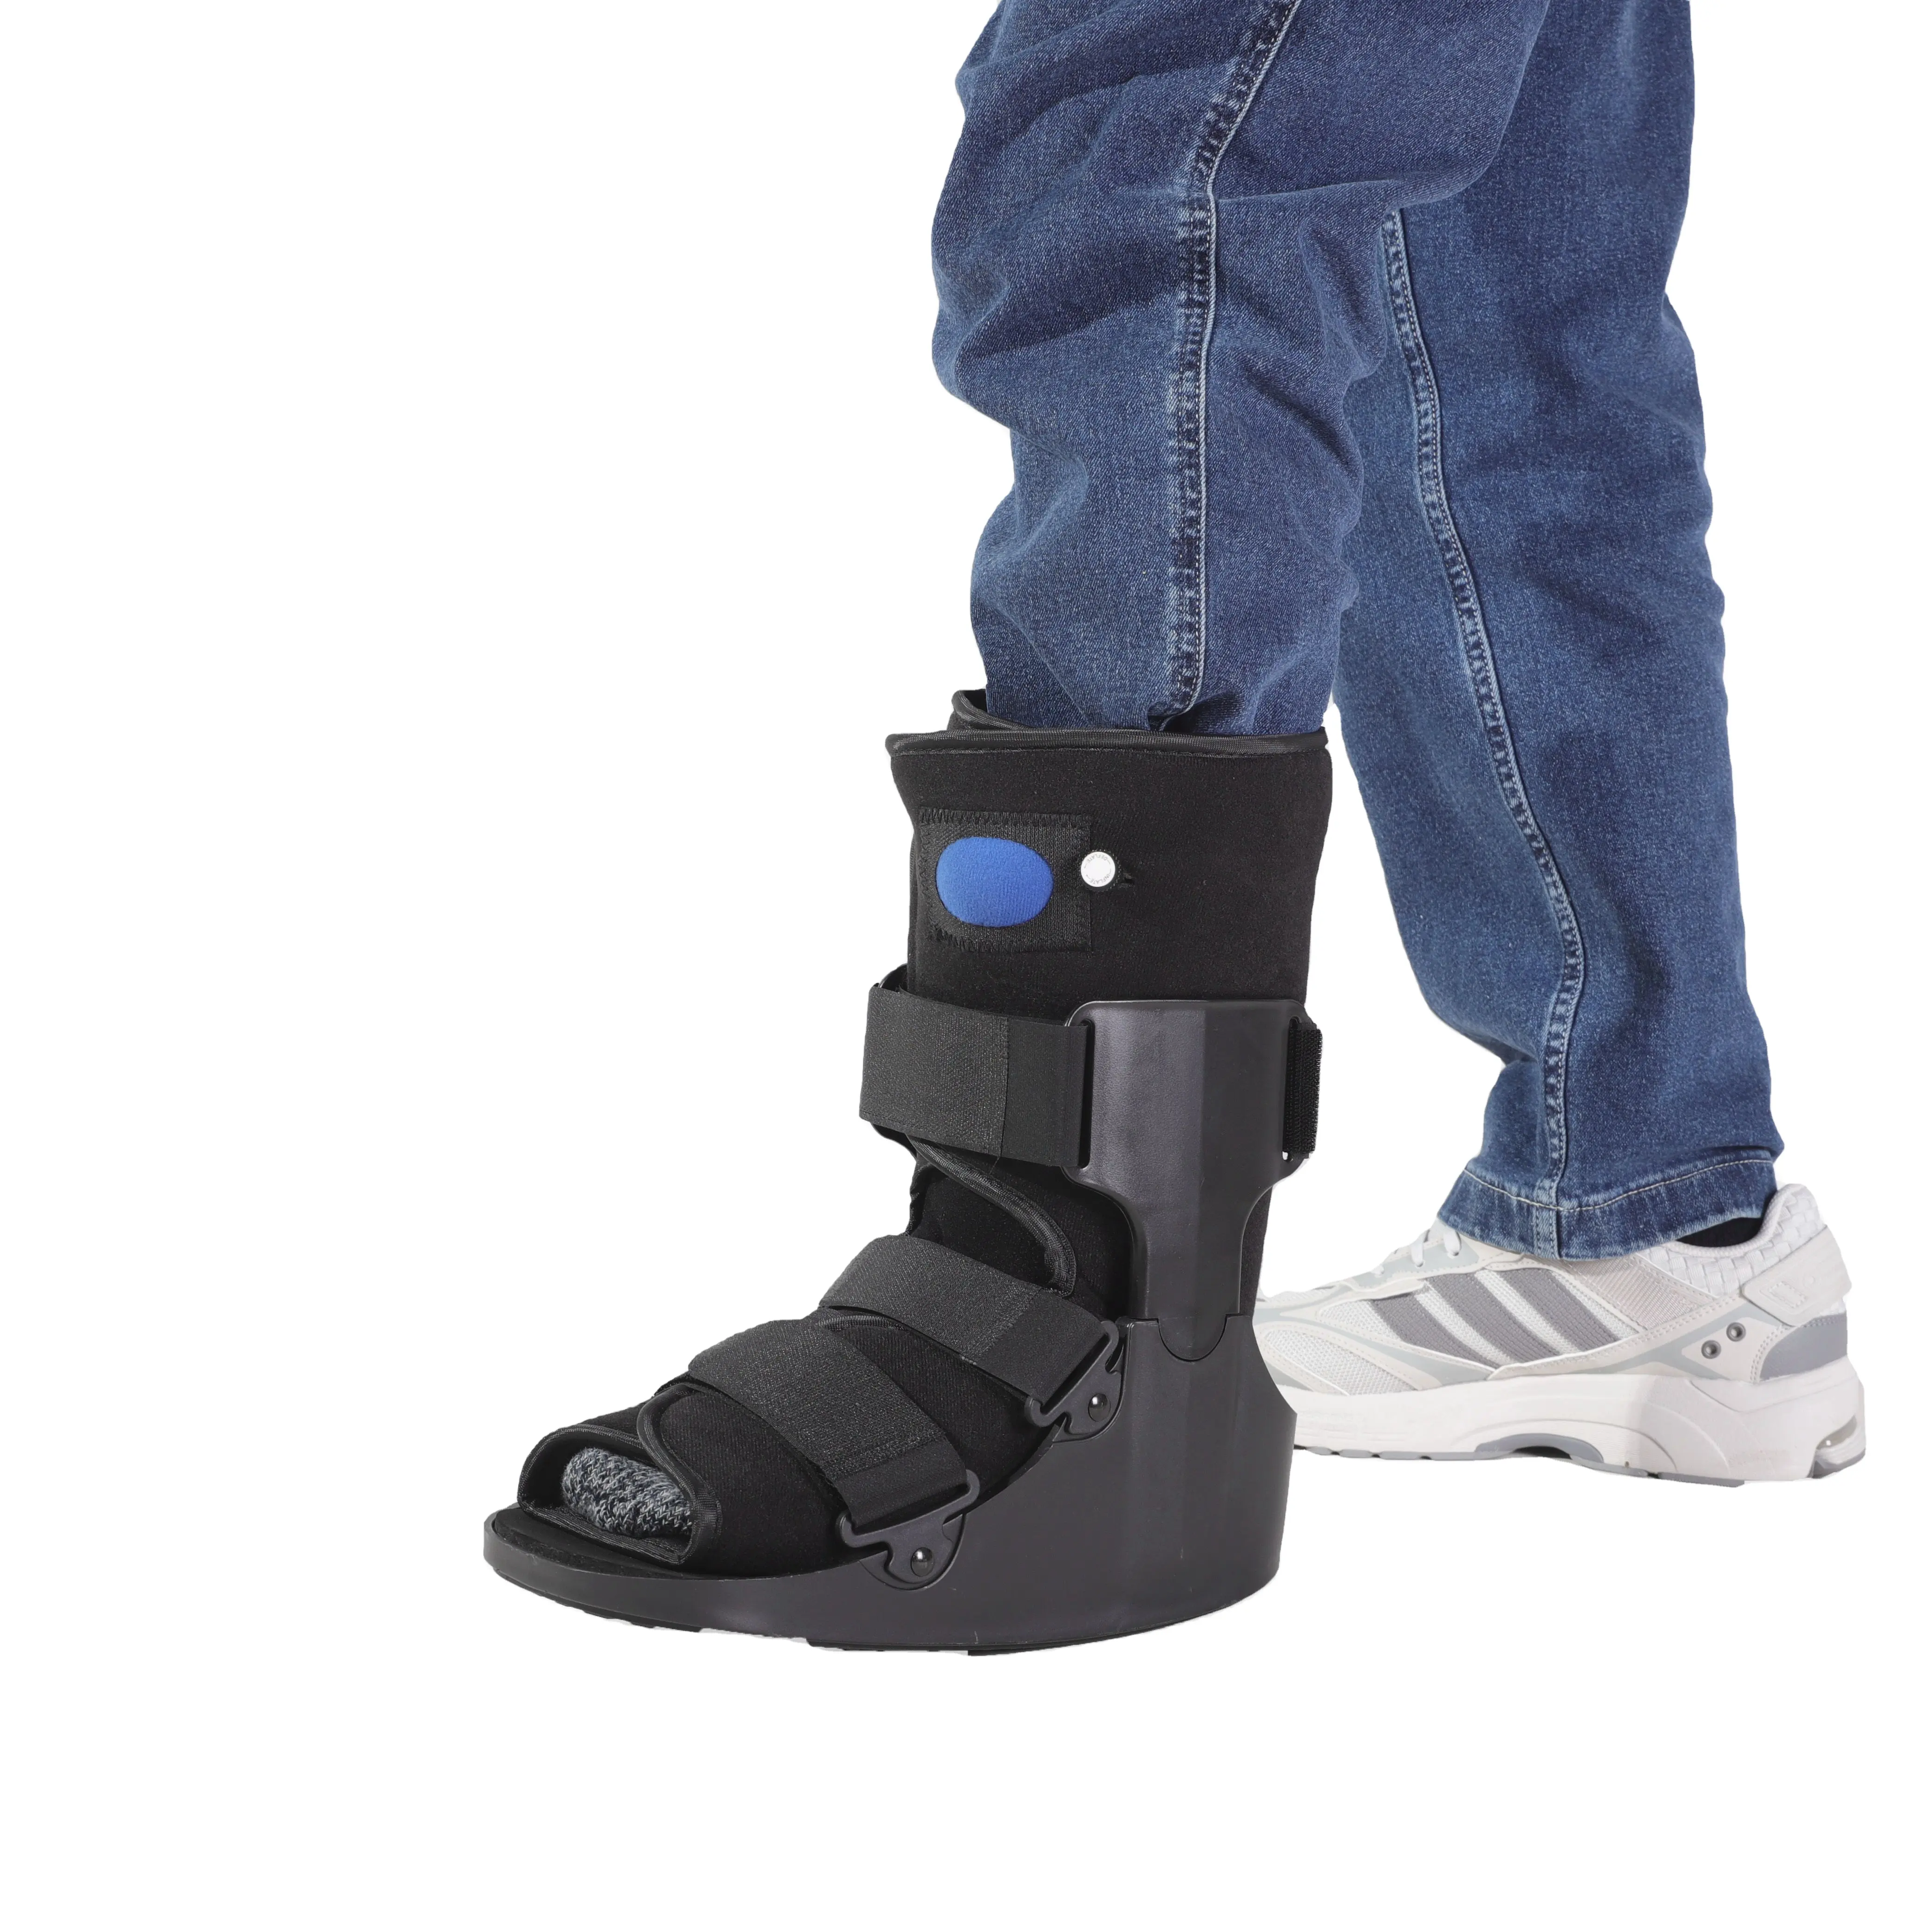 Hava kam Walker Boot ortopedik kırılma yürüyüş Boot rehabilitasyon boot walker şişme yürüyüş ayakkabısı